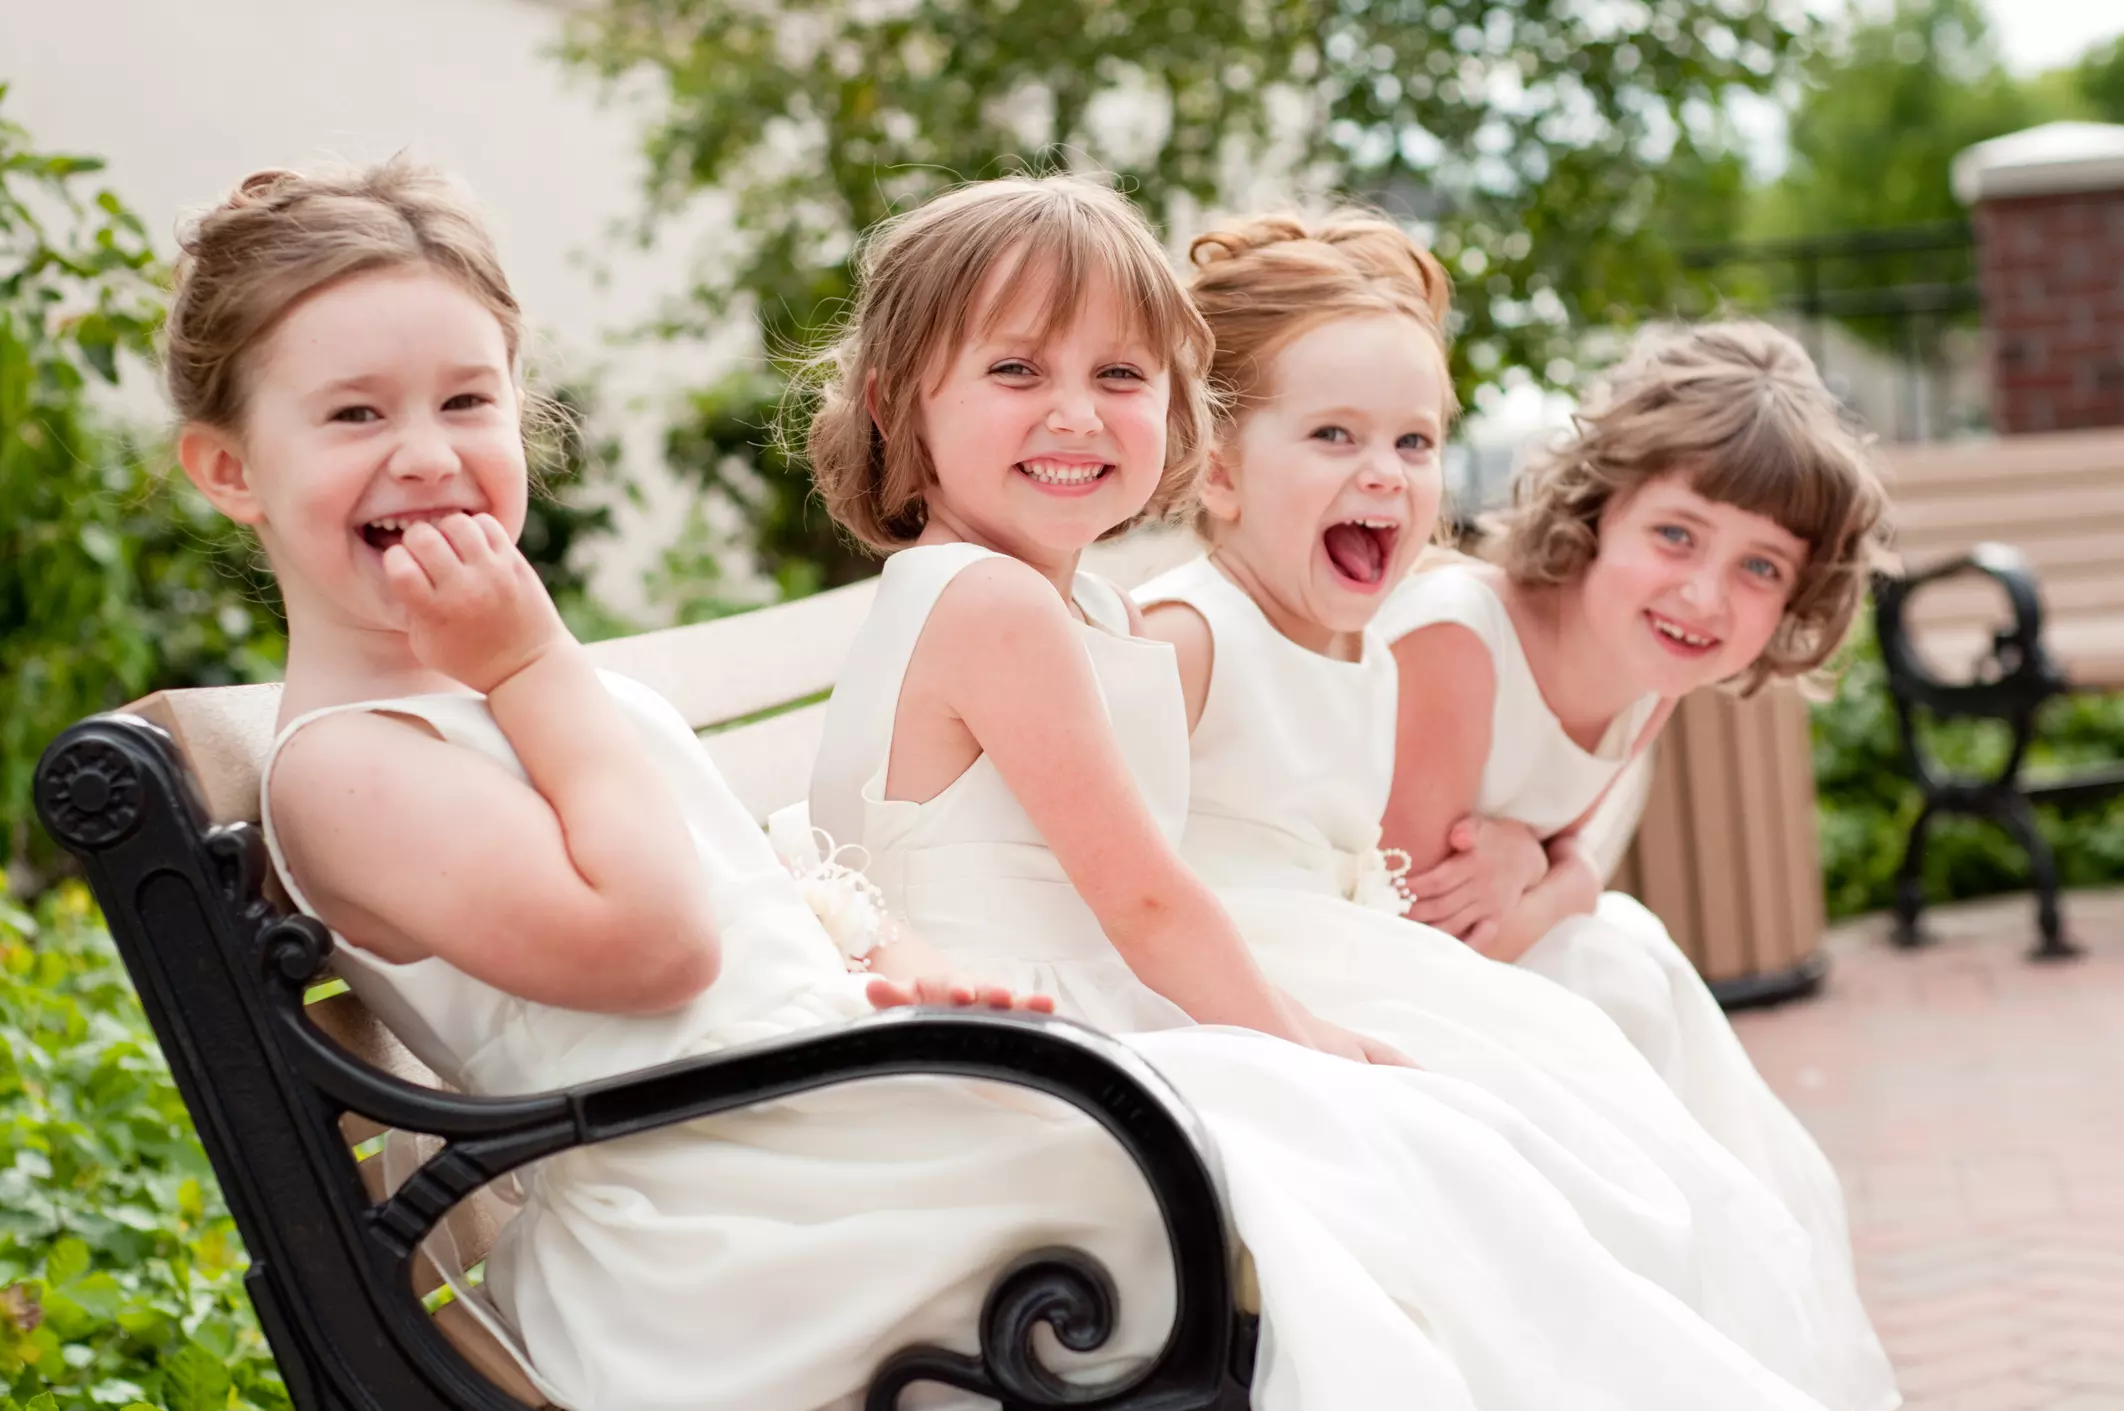 Kinder, die in einem Hochzeitsraum spielerisch beschäftigt werden, fröhlich lachen und kreative Aktivitäten genießen, während ihre Eltern sich auf die Feierlichkeiten konzentrieren können.